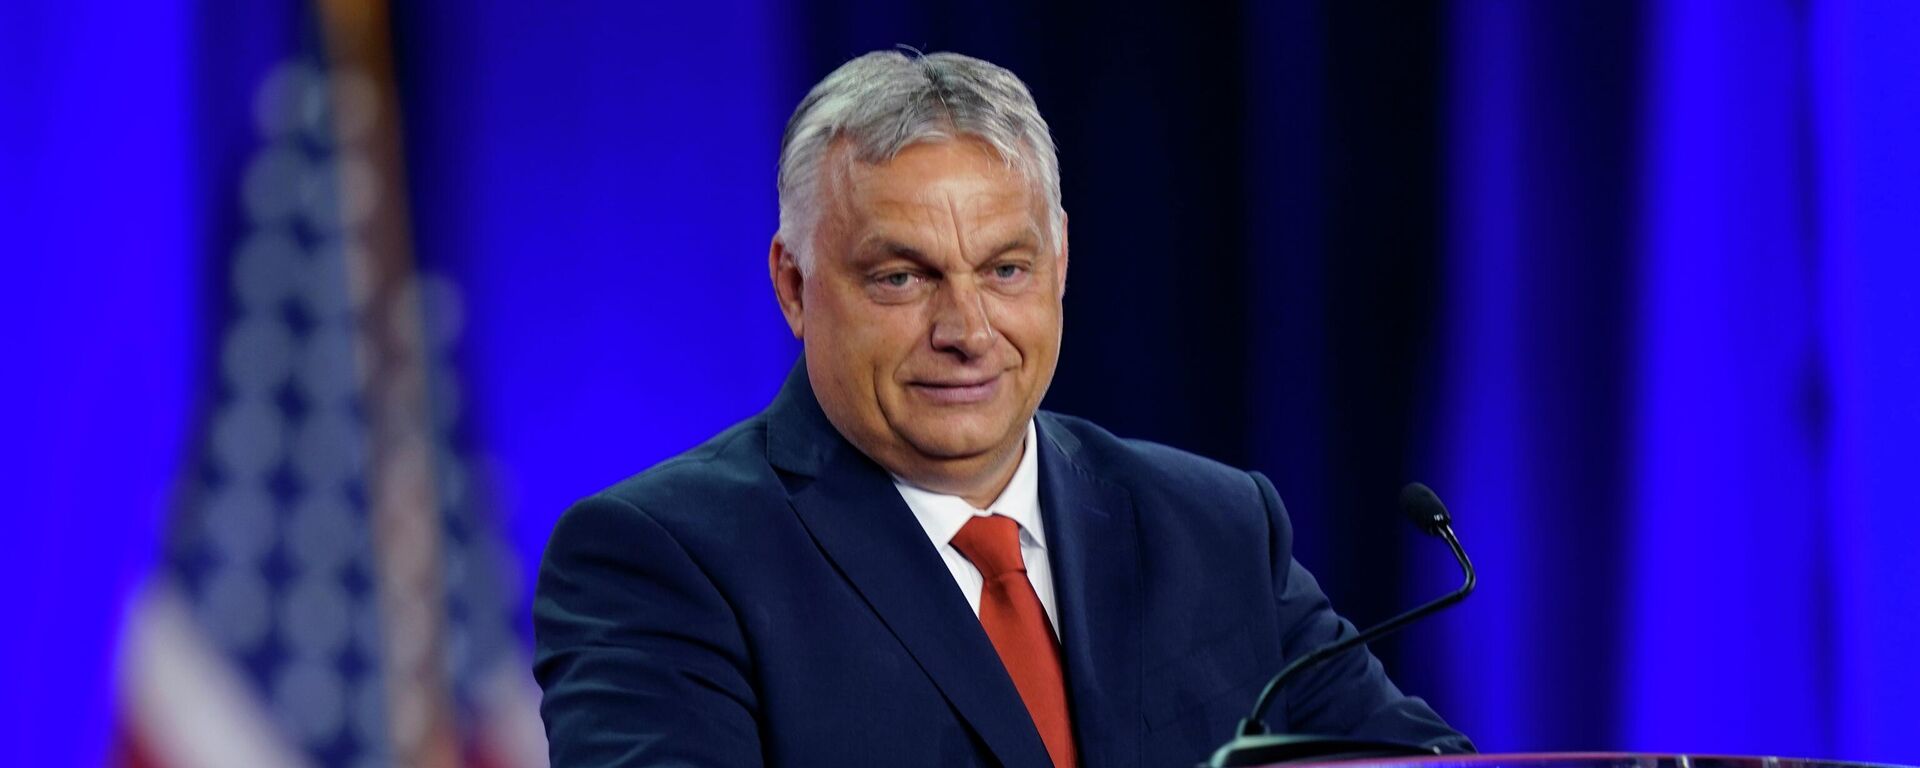 Mađarski premijer Viktor Orban govori na Konferenciji konzervativne političke akcije (CPAC) u Dalasu - Sputnik Srbija, 1920, 05.08.2022